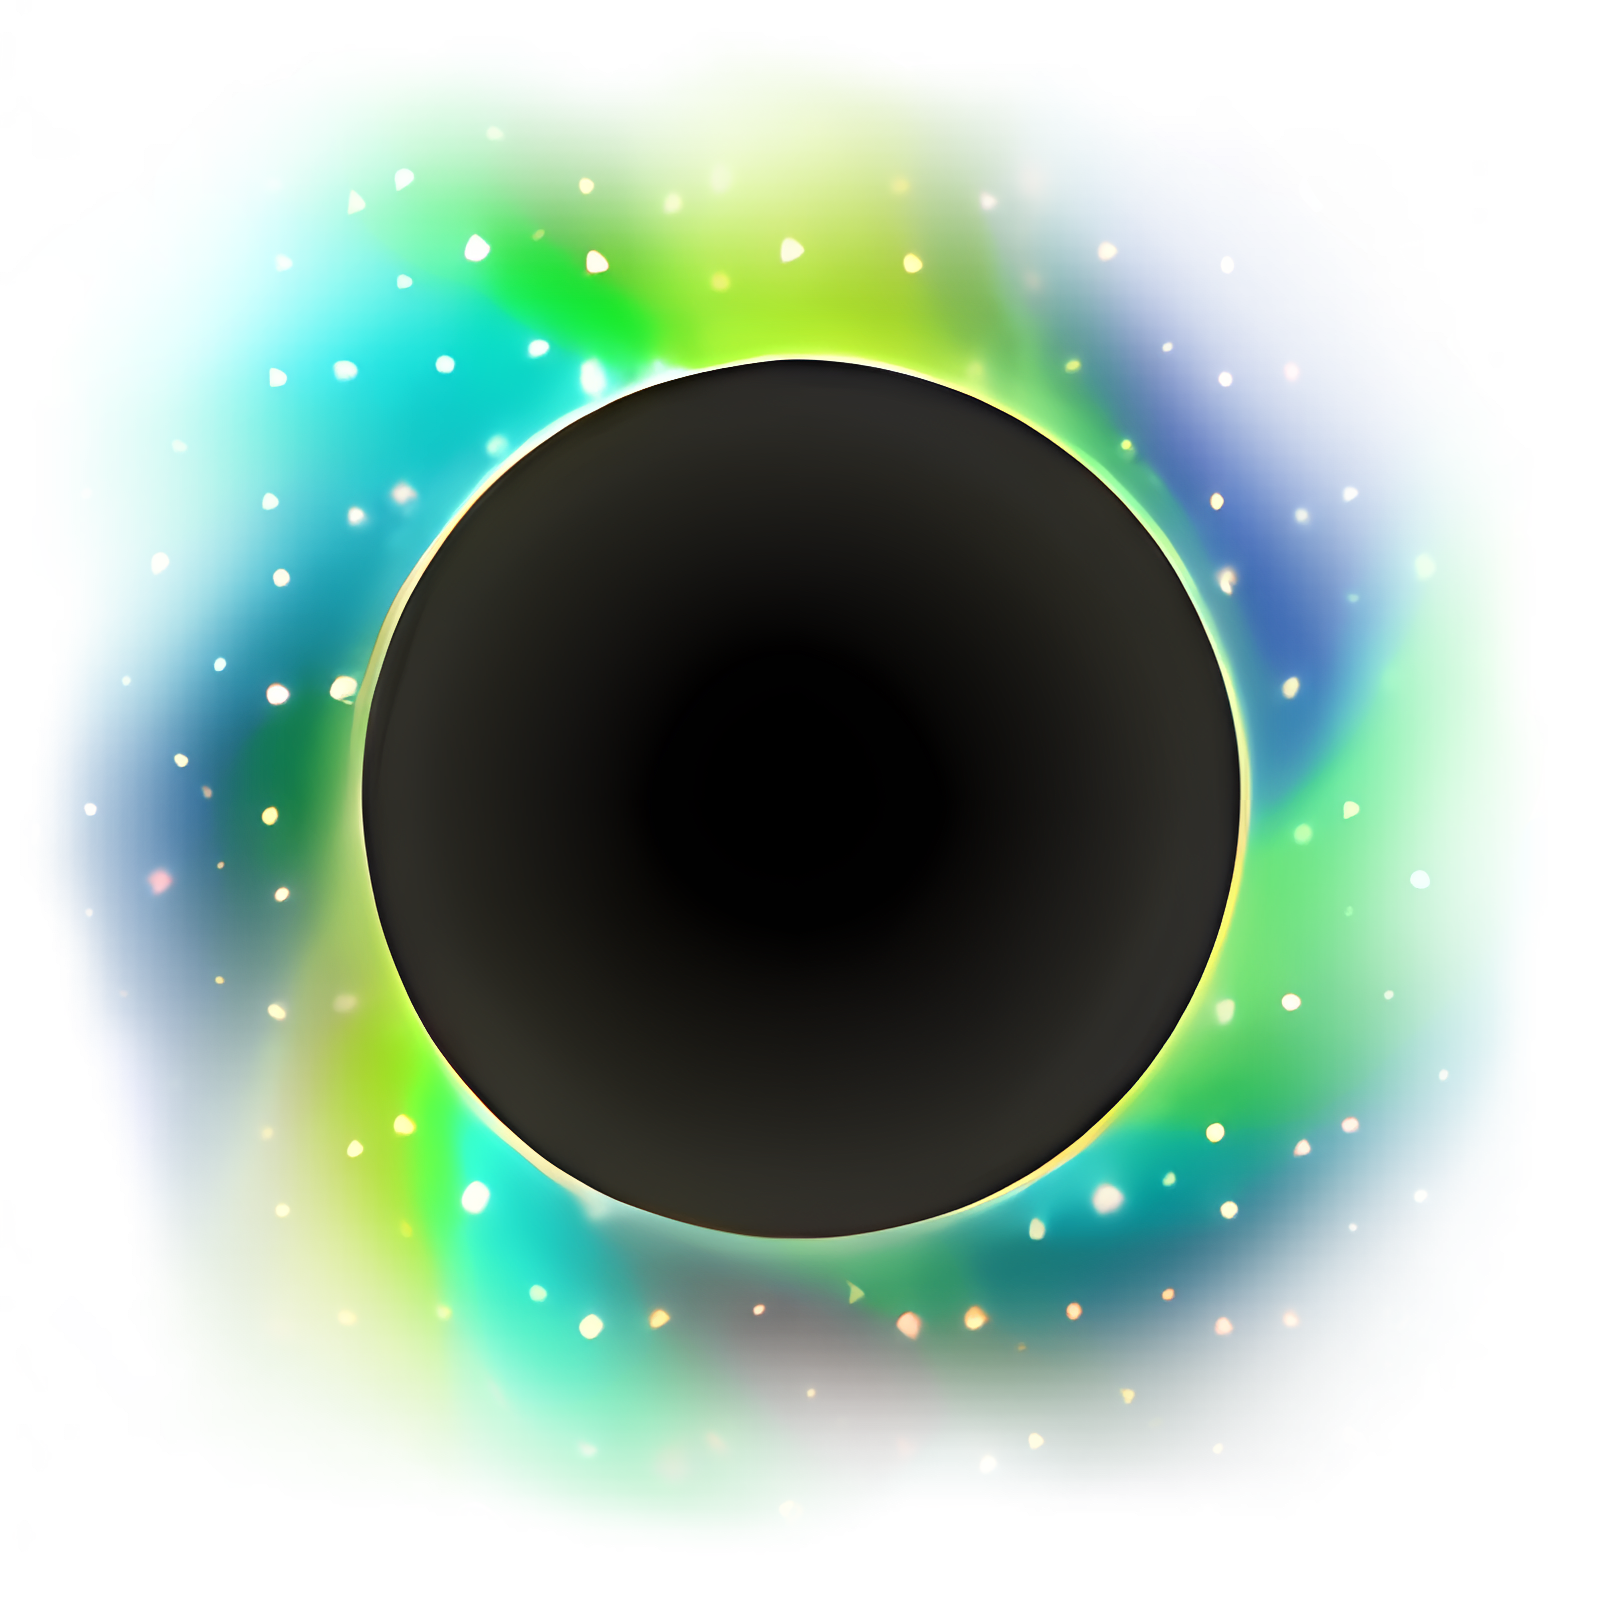 下载 Black Hole 安装 最新 App 下载程序